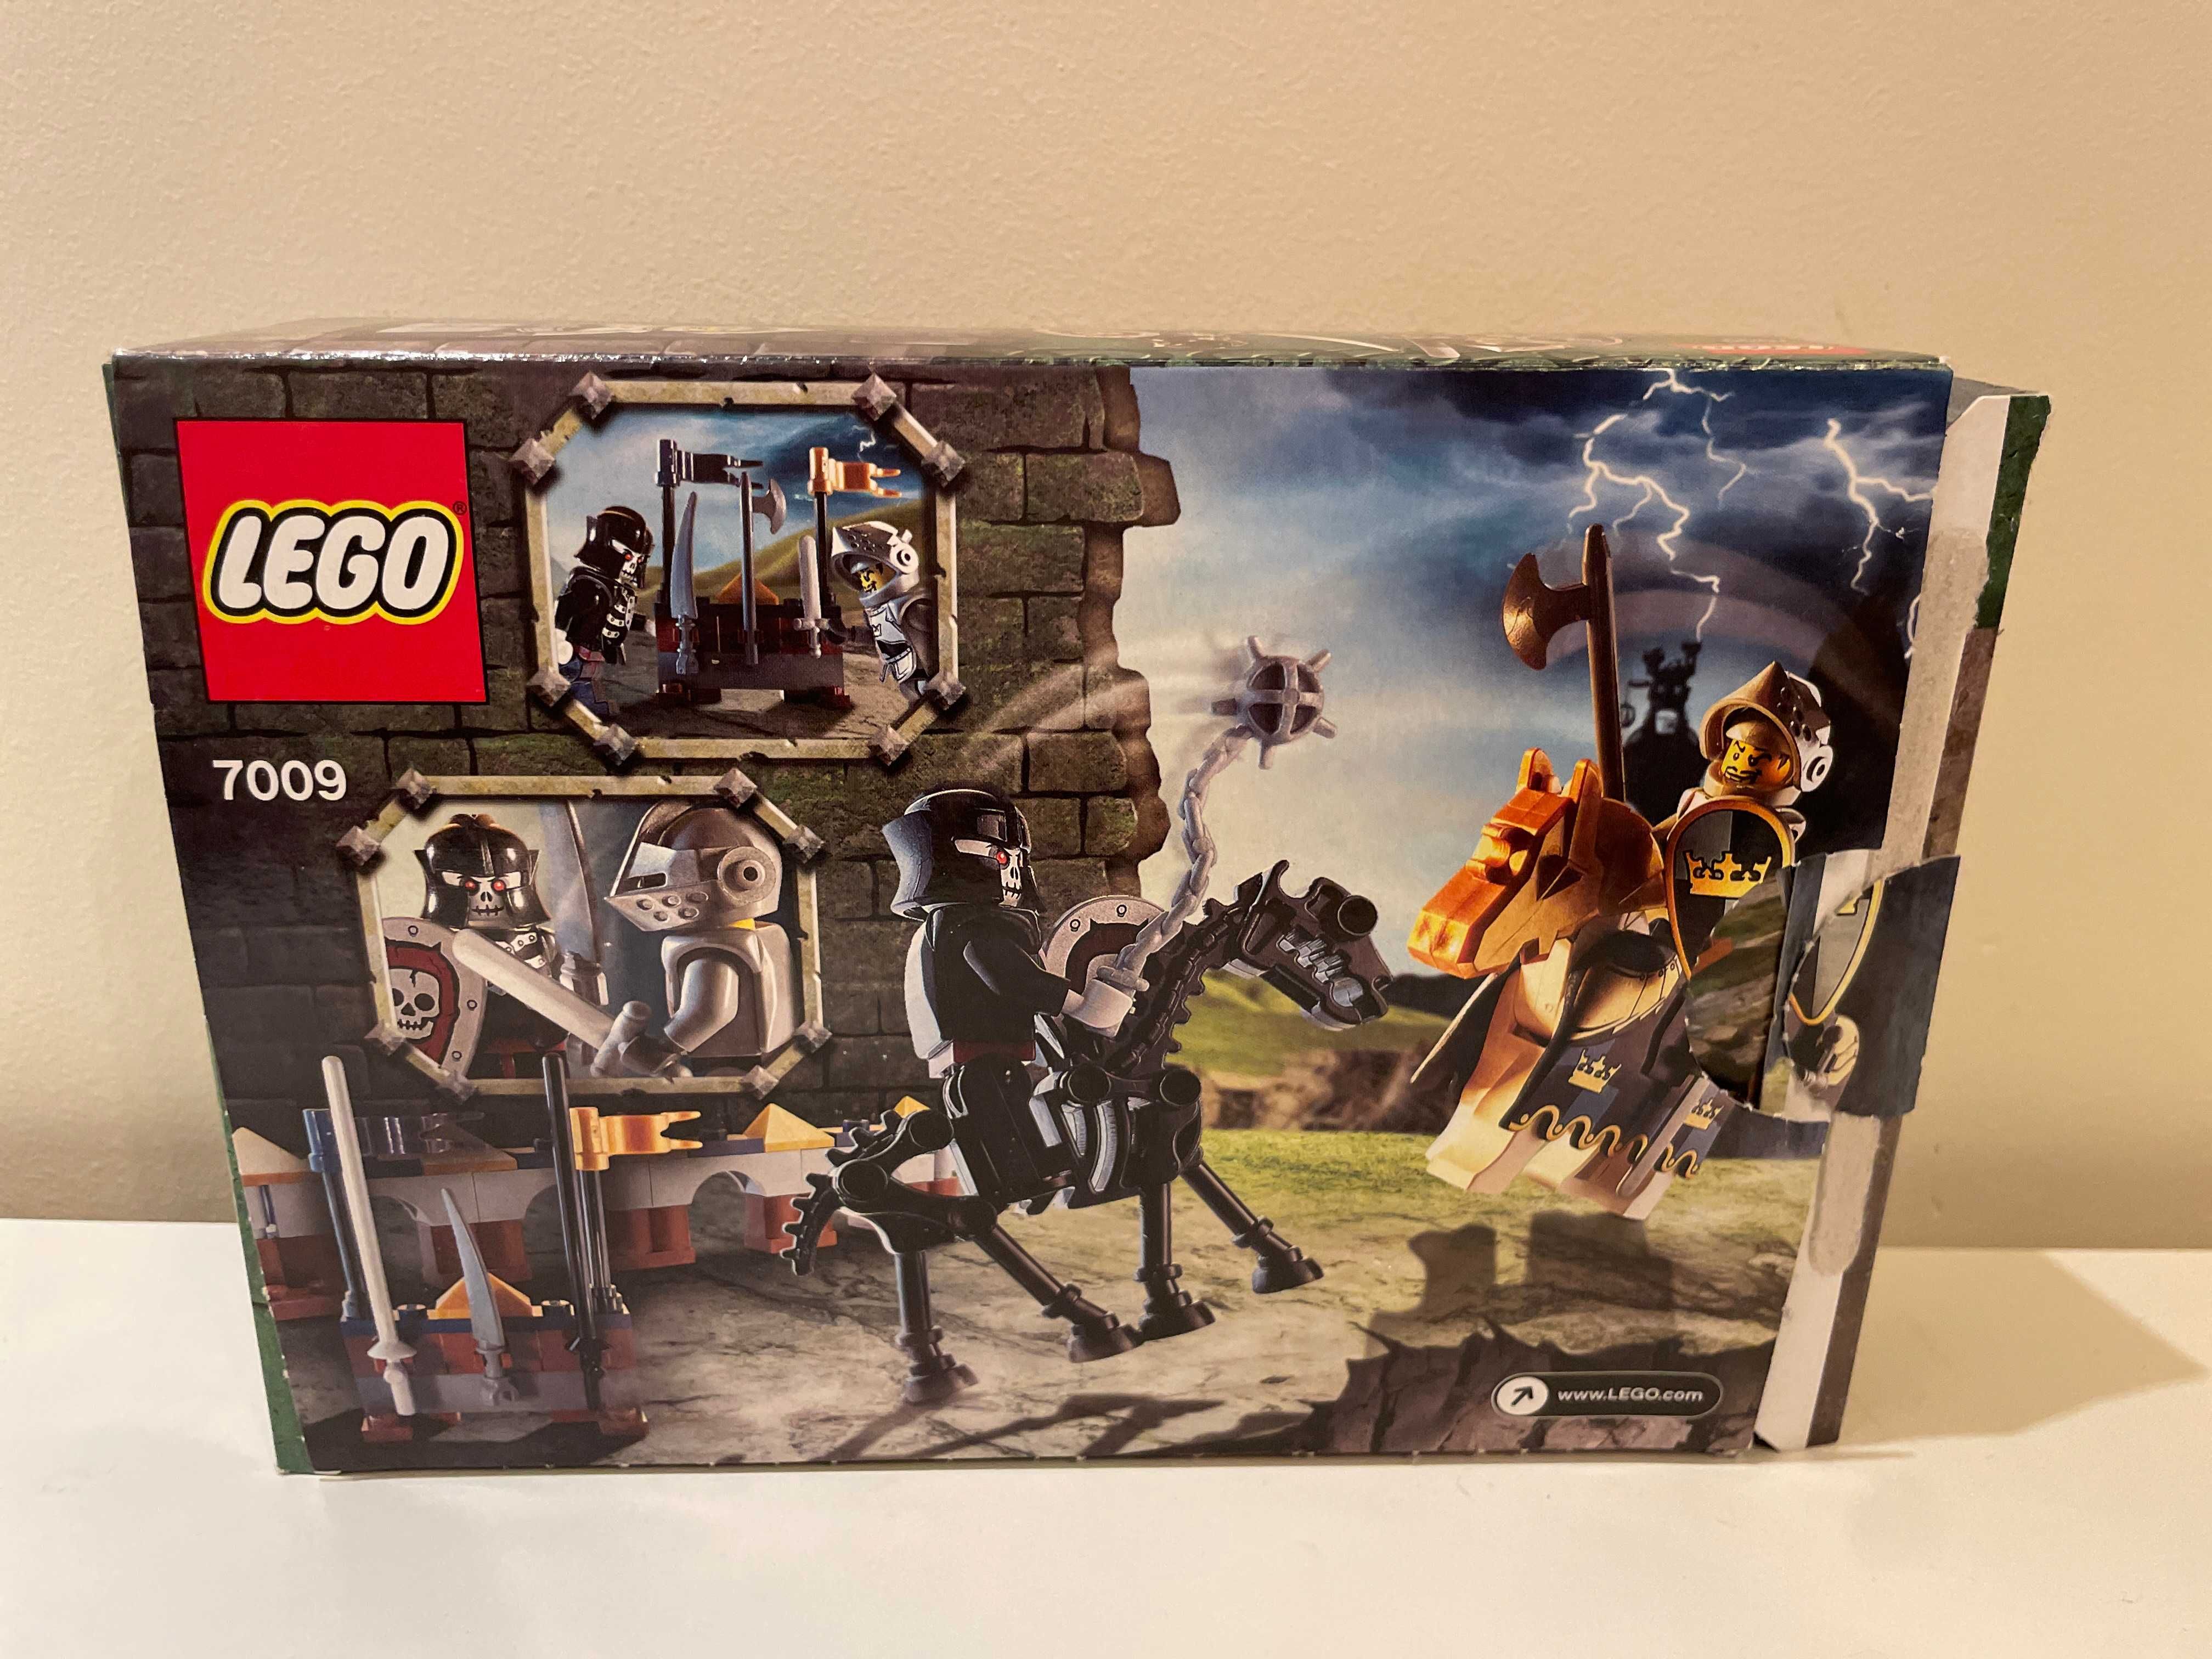 Lego 7009 Zamek Castle -  Ostateczne starcie The Final Joust